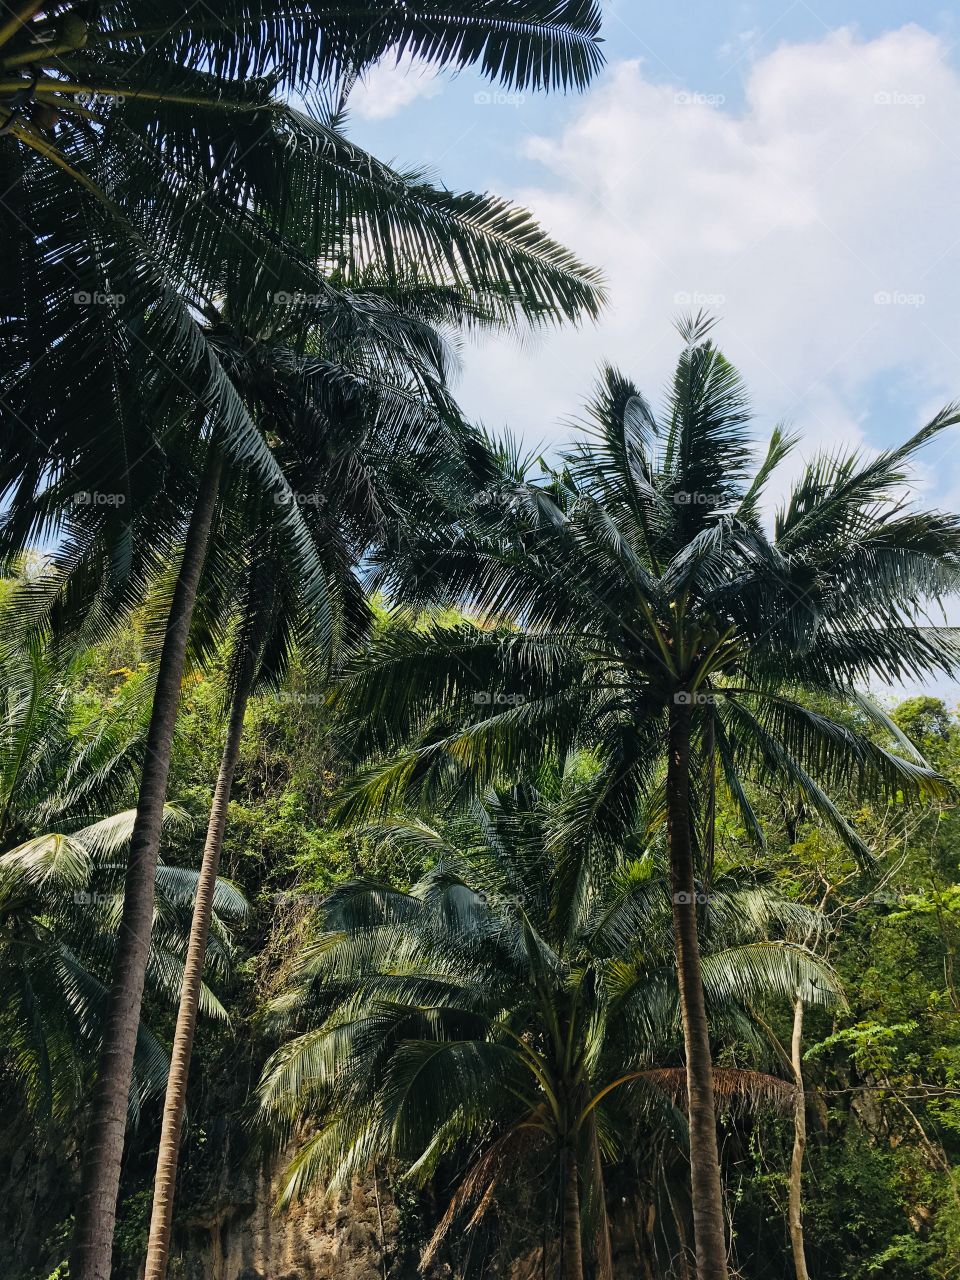 Palms in Thailand 